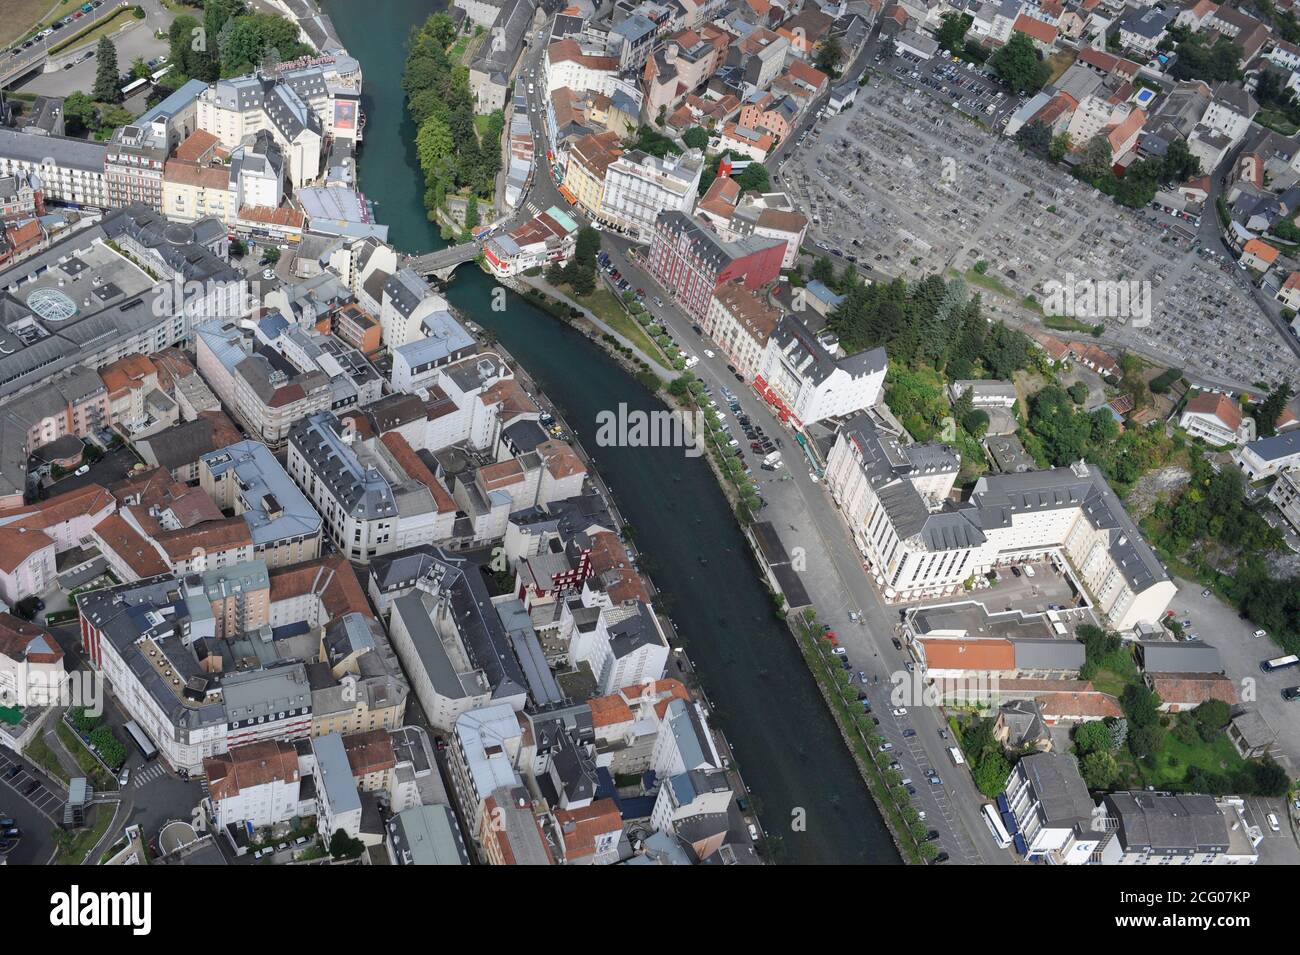 France, Hautes Pyrénées, Lourdes, haut lieu de pèlerinage pour les catholiques (vue aérienne) Banque D'Images